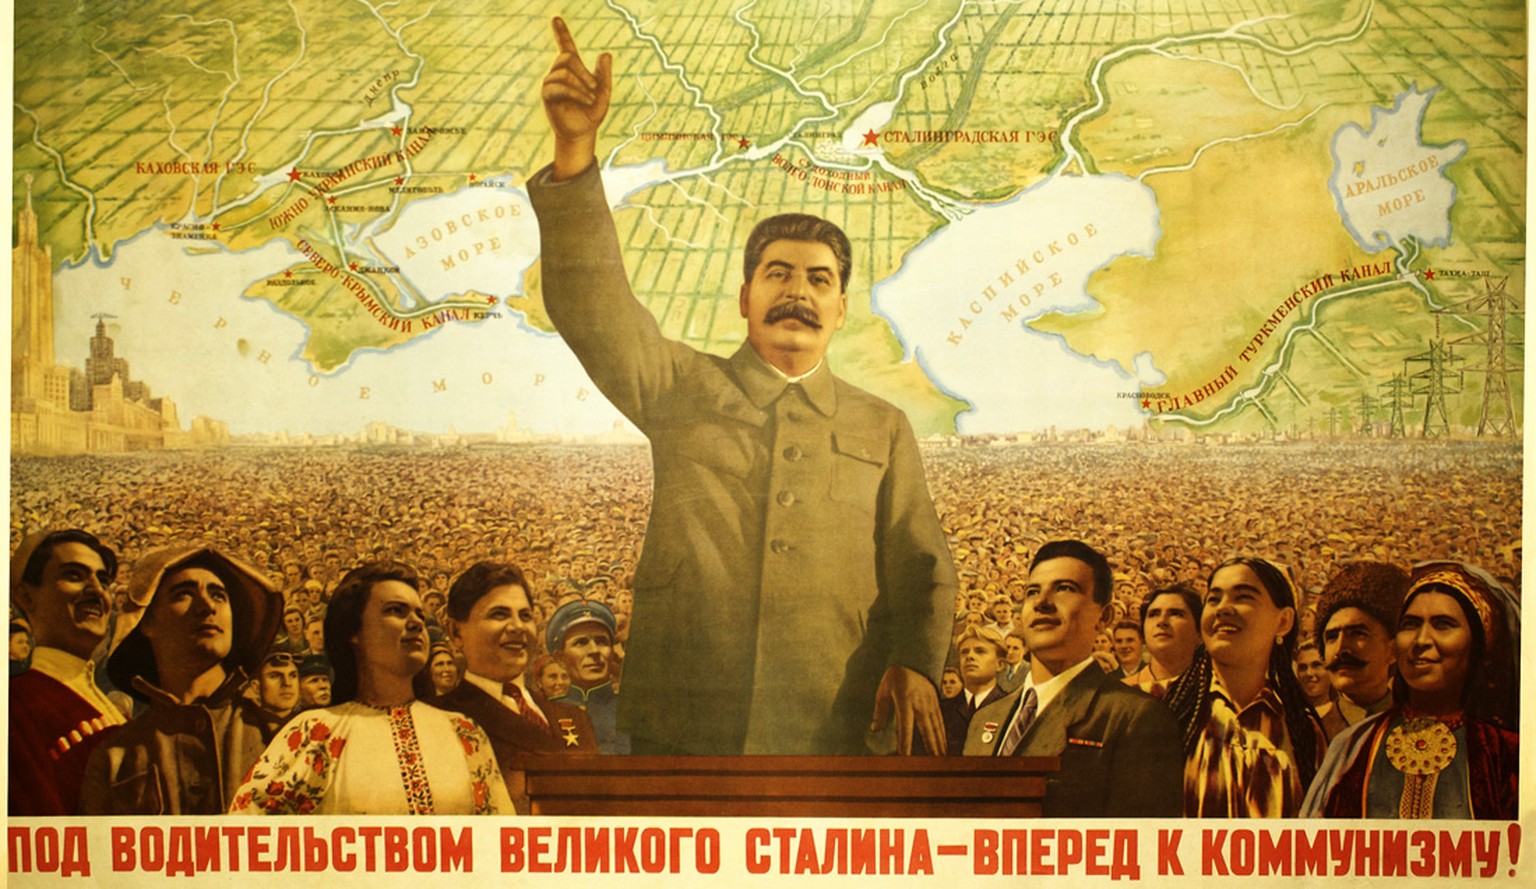 «Unter der Führung des grossen Stalin, vorwärts zum Kommunismus!»